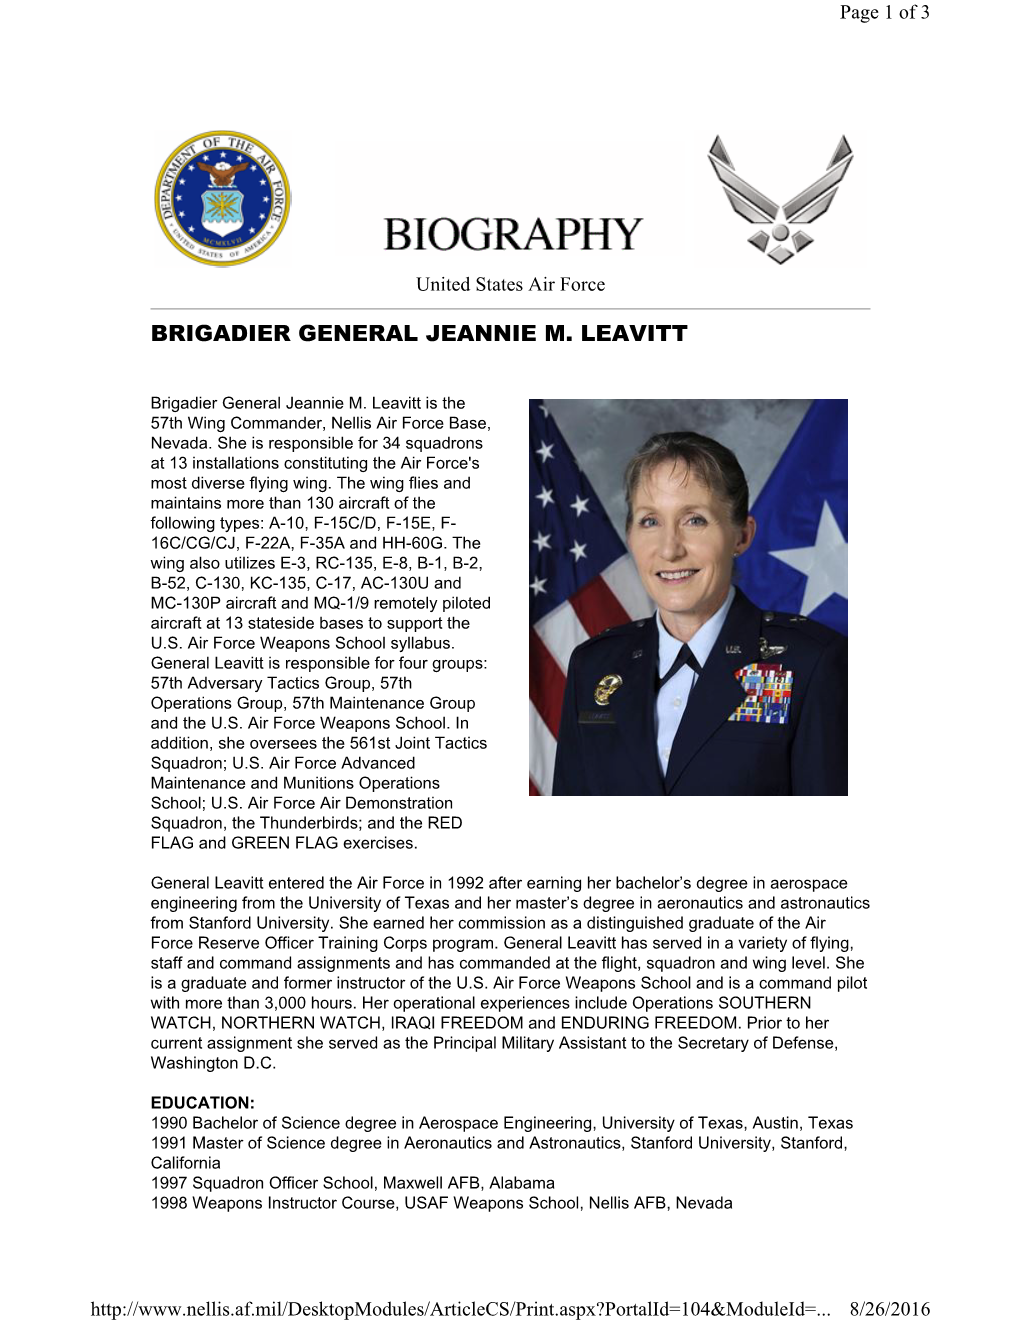 Brigadier General Jeannie M. Leavitt